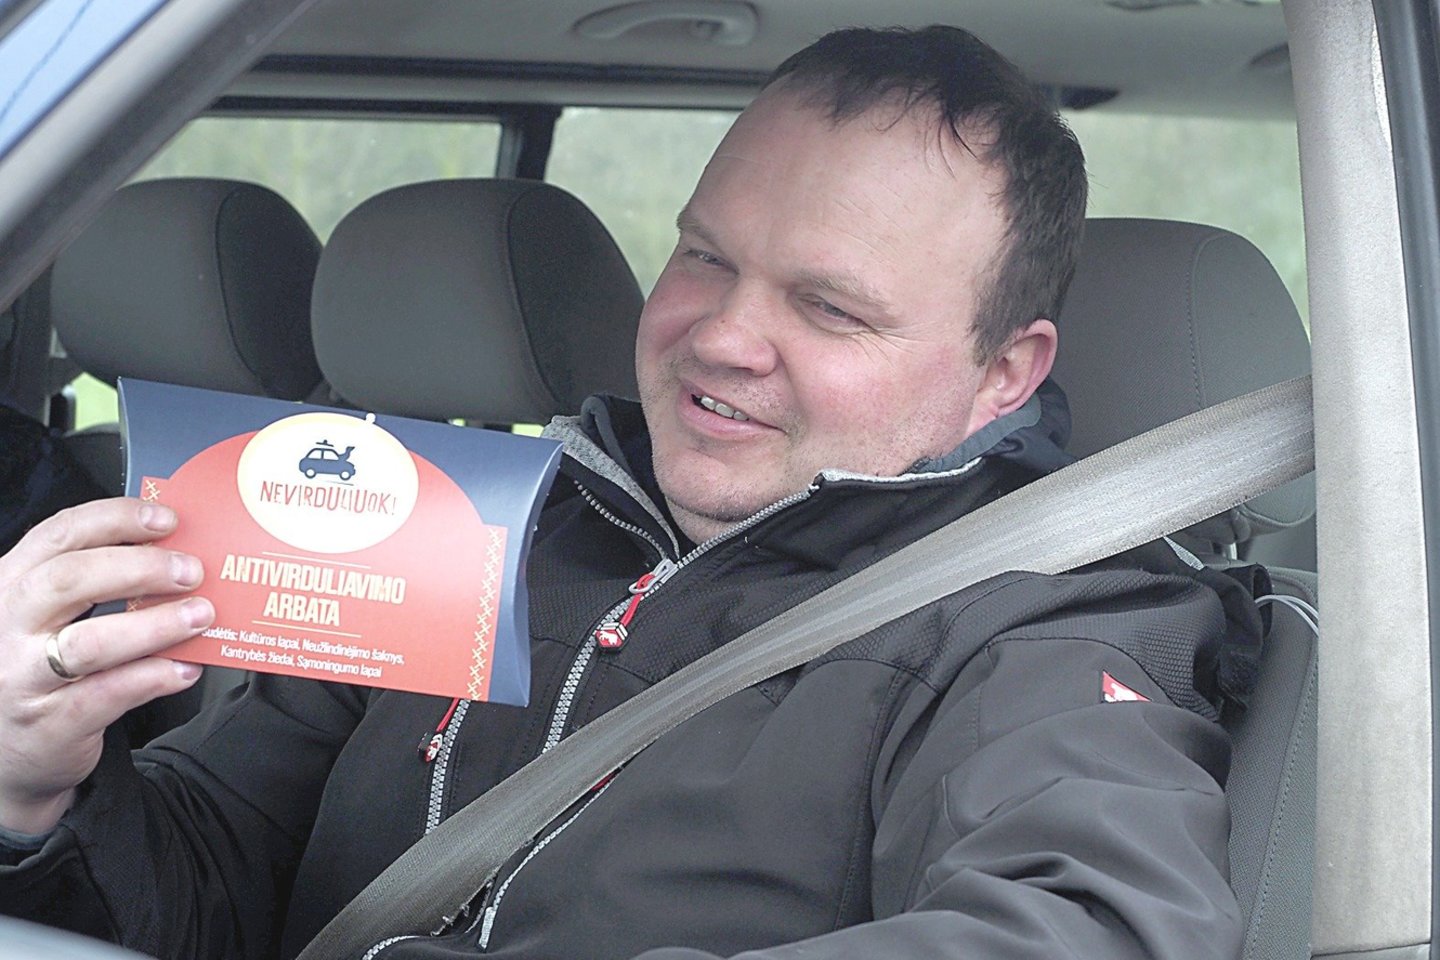 Mikroautobuso vairuotojas panevėžietis R.Kaminskas džiaugėsi iš pareigūnų gauta antivirduliavimo arbata.<br>A.Švelnos nuotr.